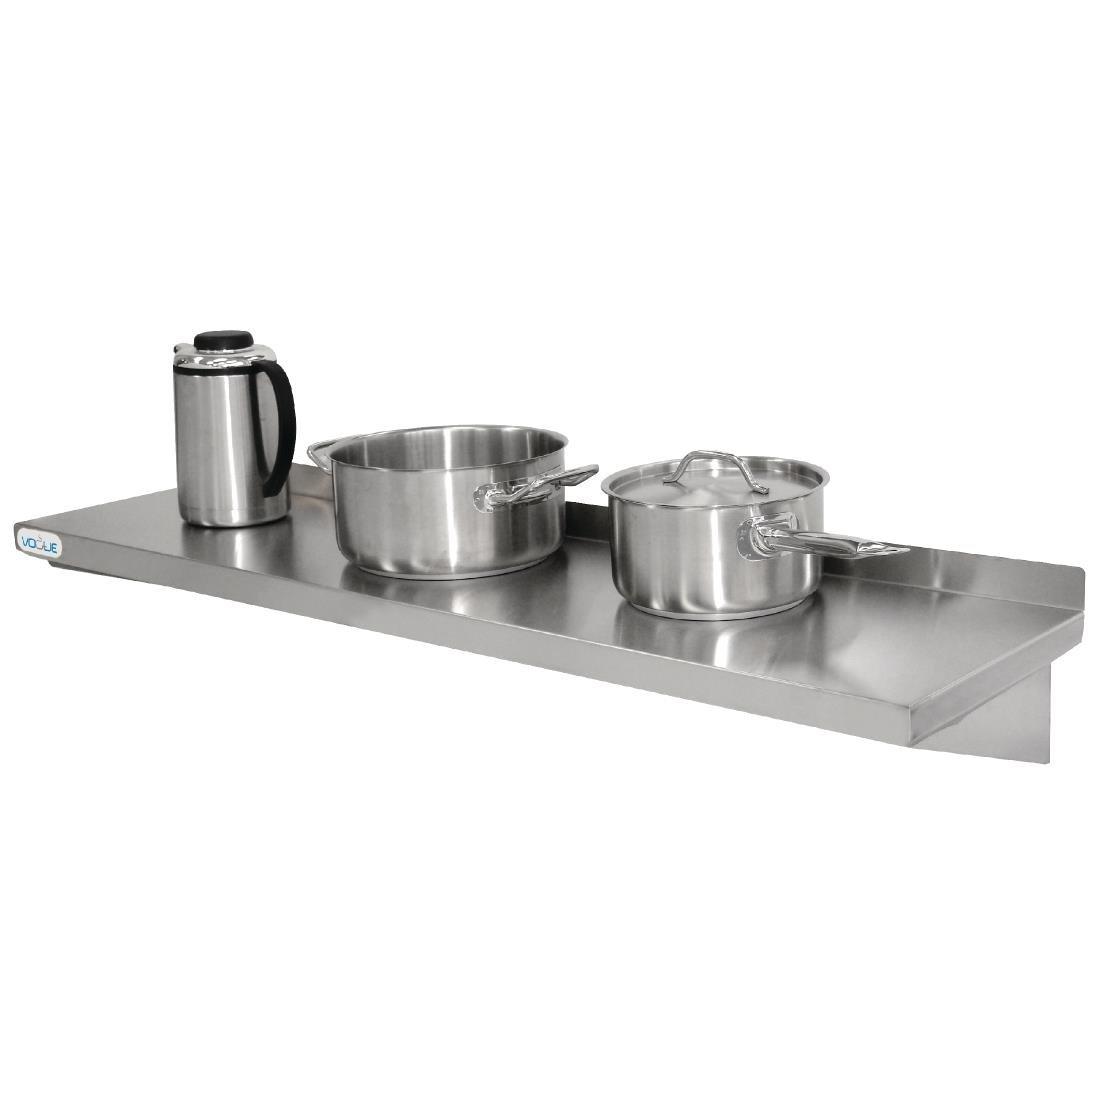 Y749 - Stainless Steel Kitchen Shelf